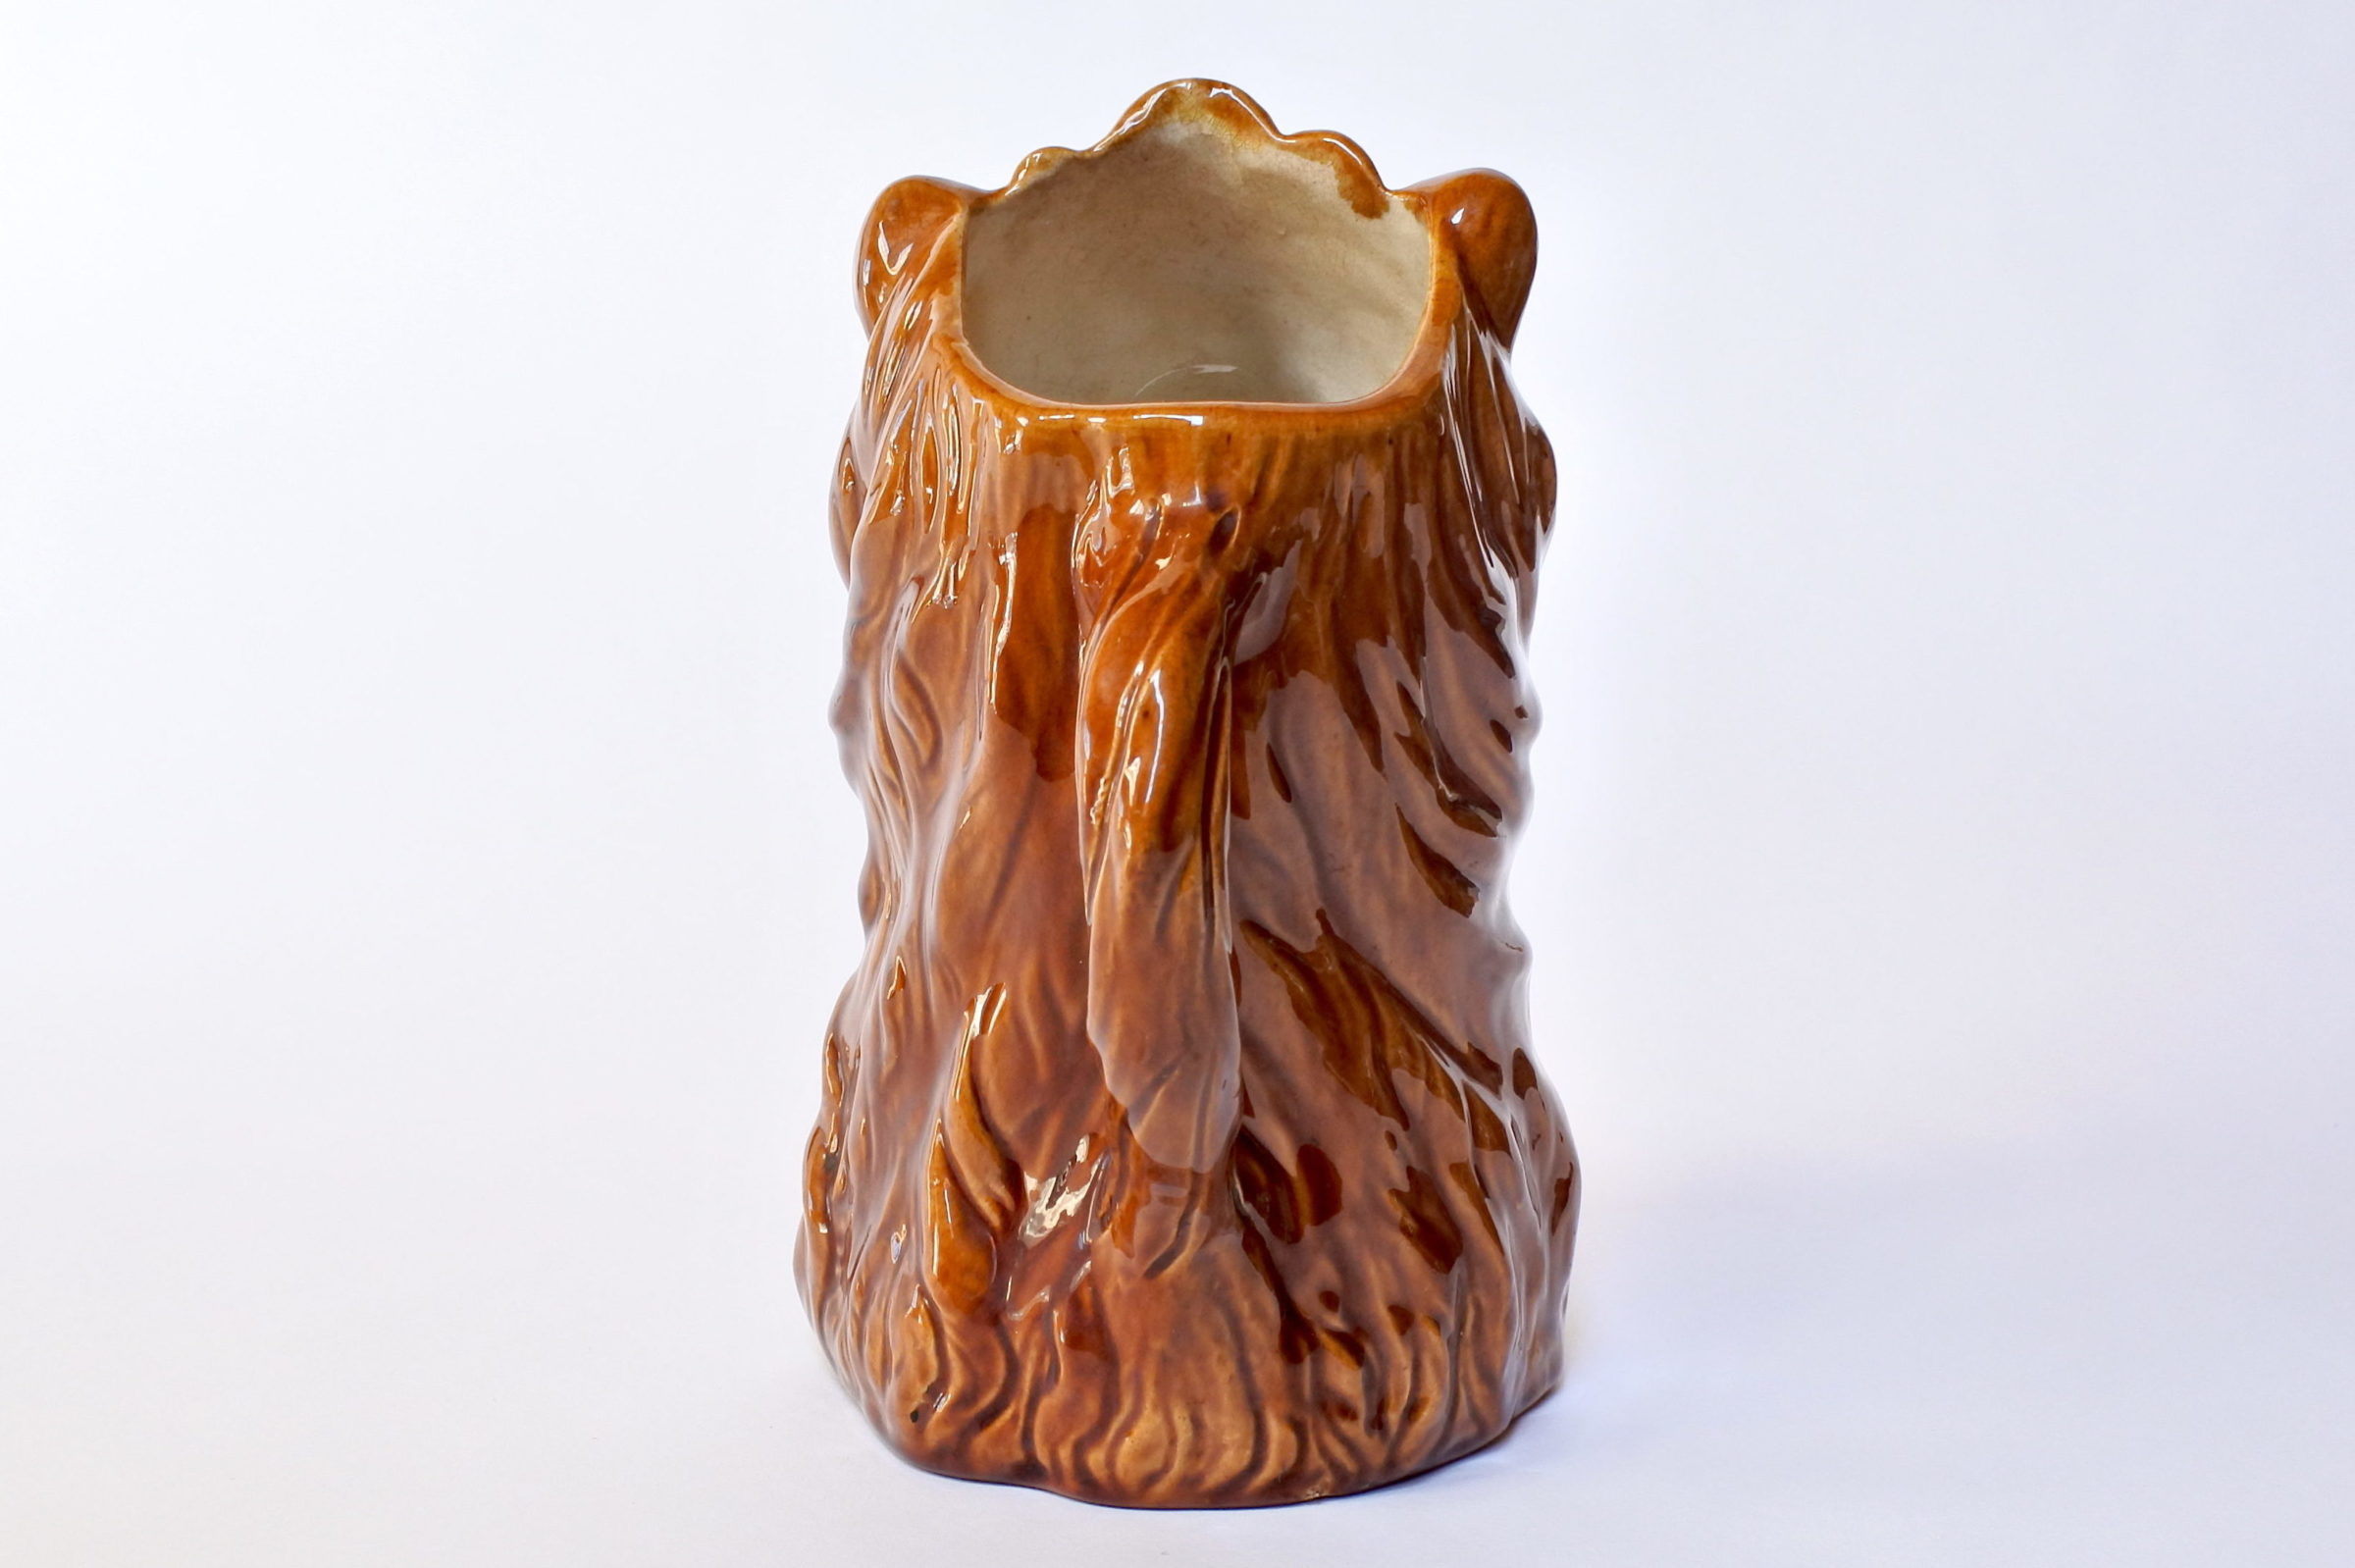 Brocca in ceramica barbotine a forma di leone con lucertola - 3